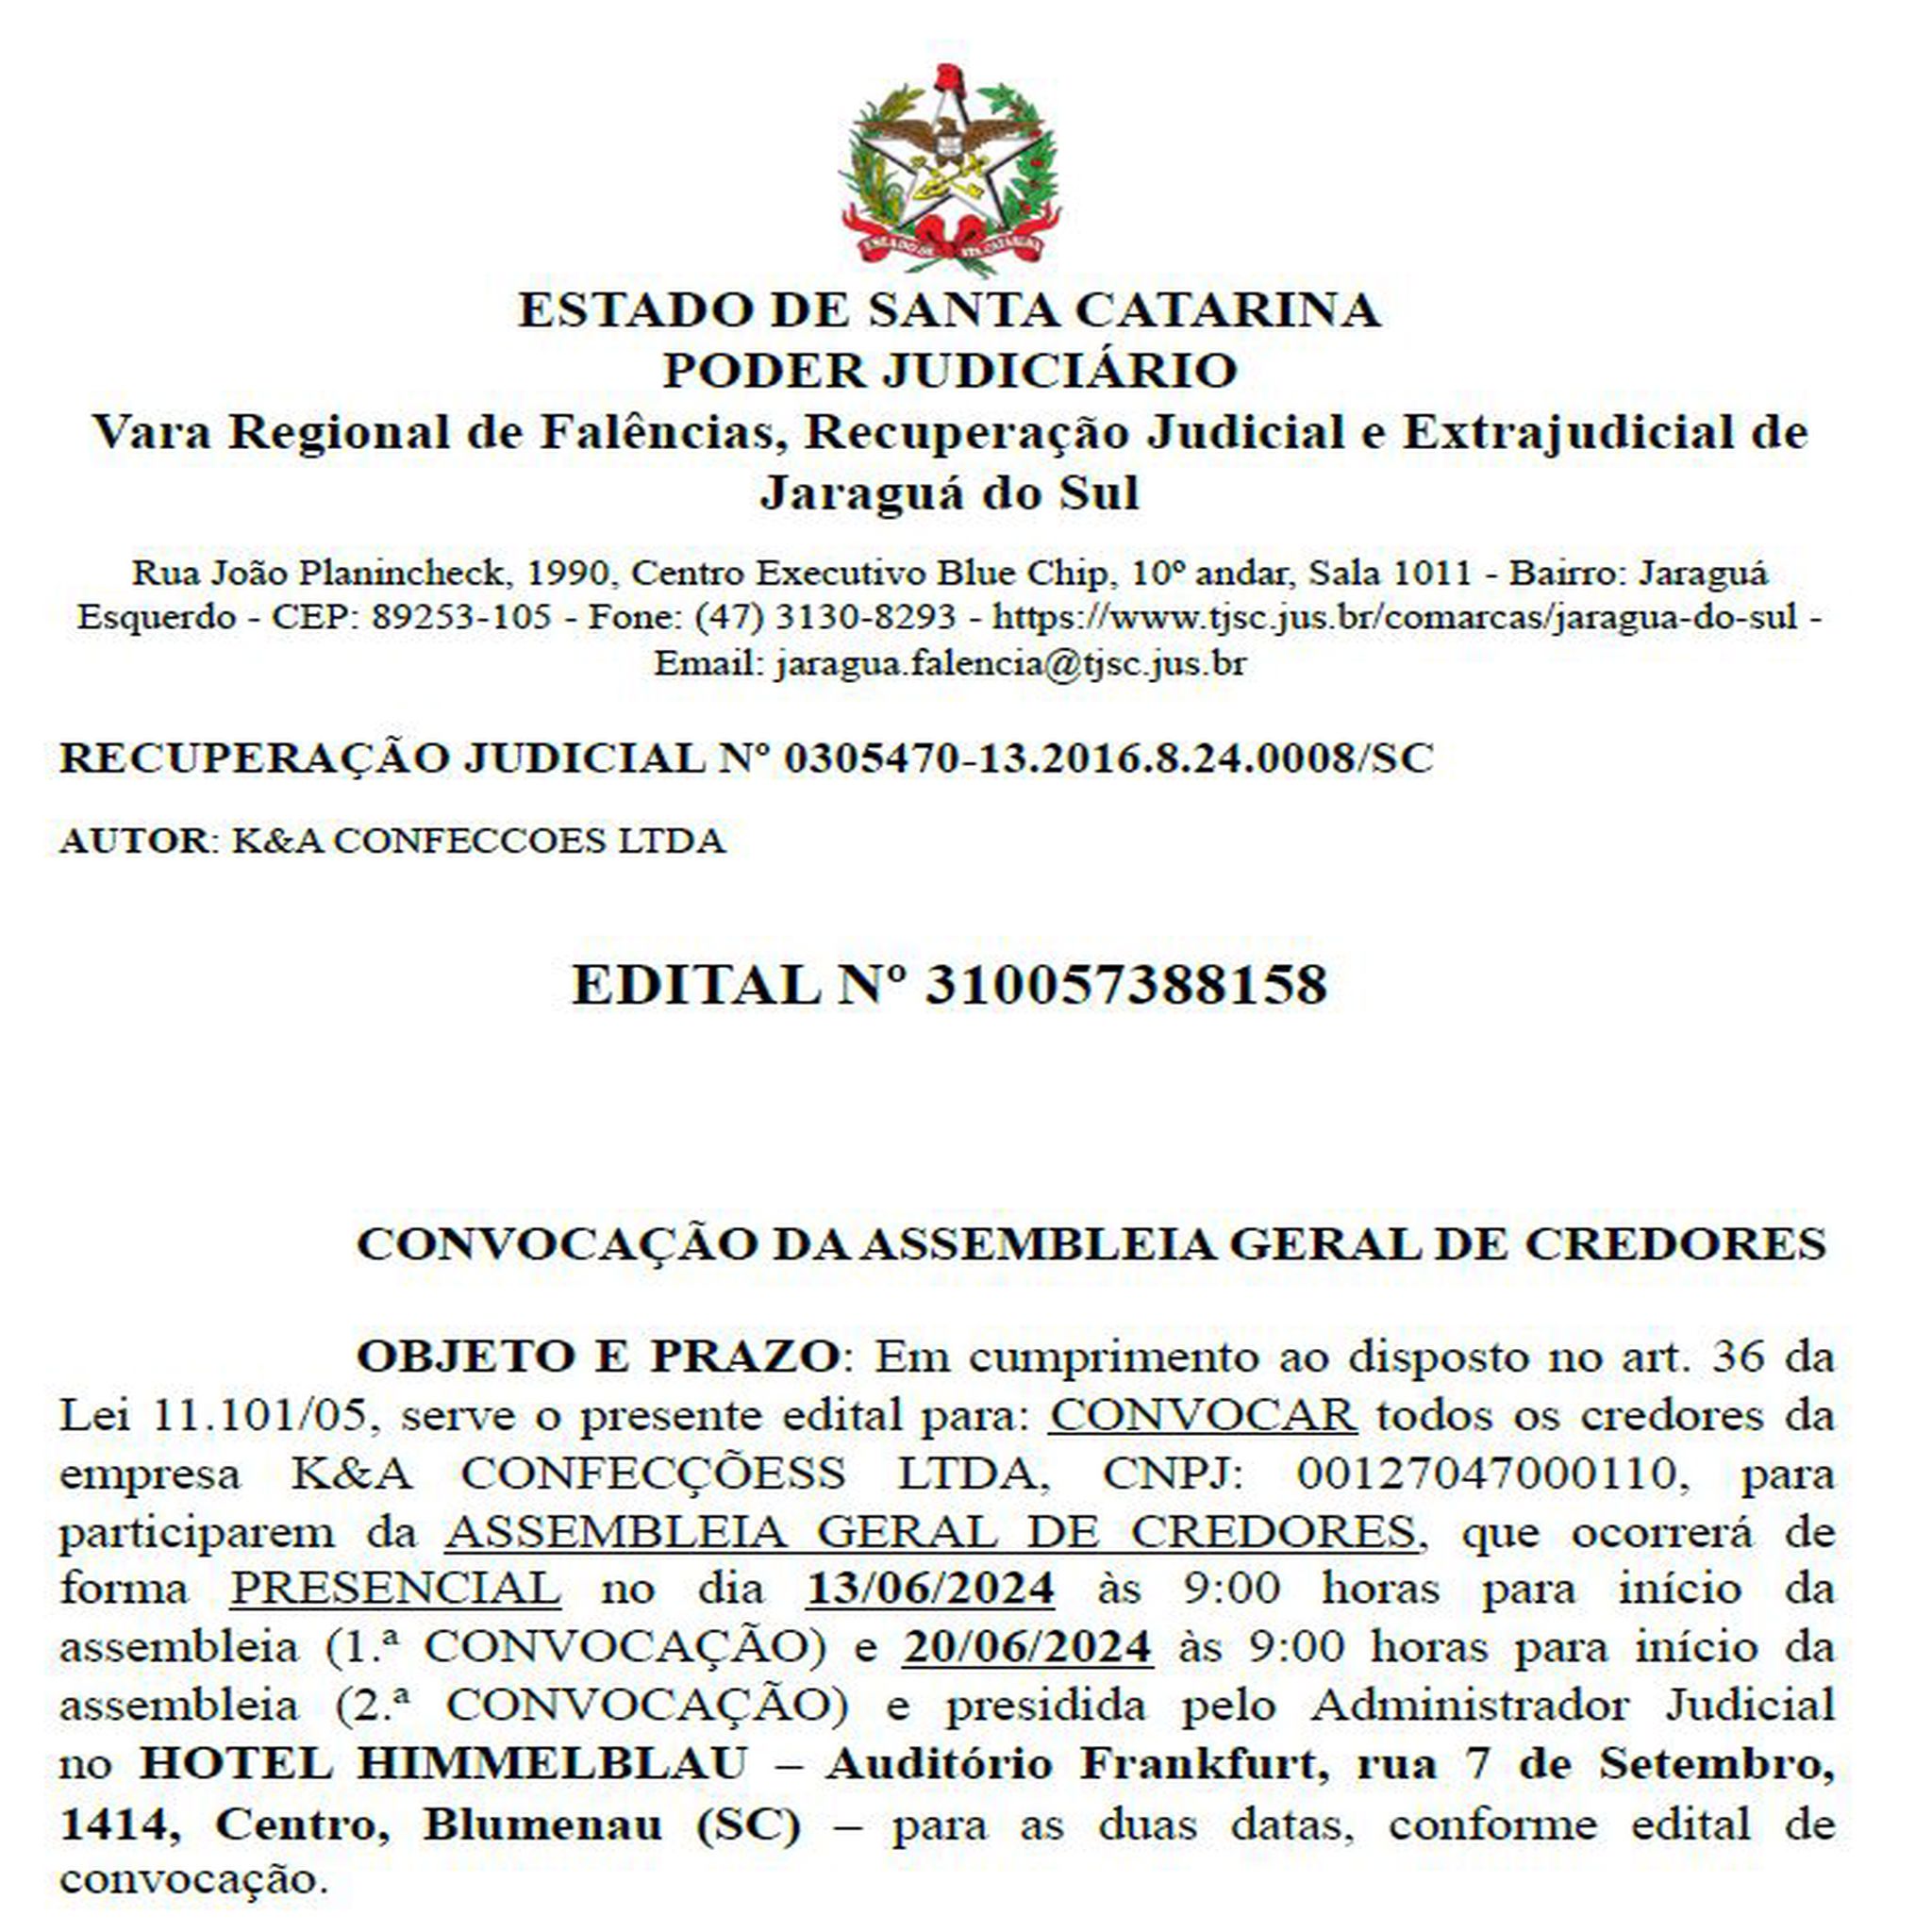 Edital - Recuperação Judicial K&A Confecções Ltda.